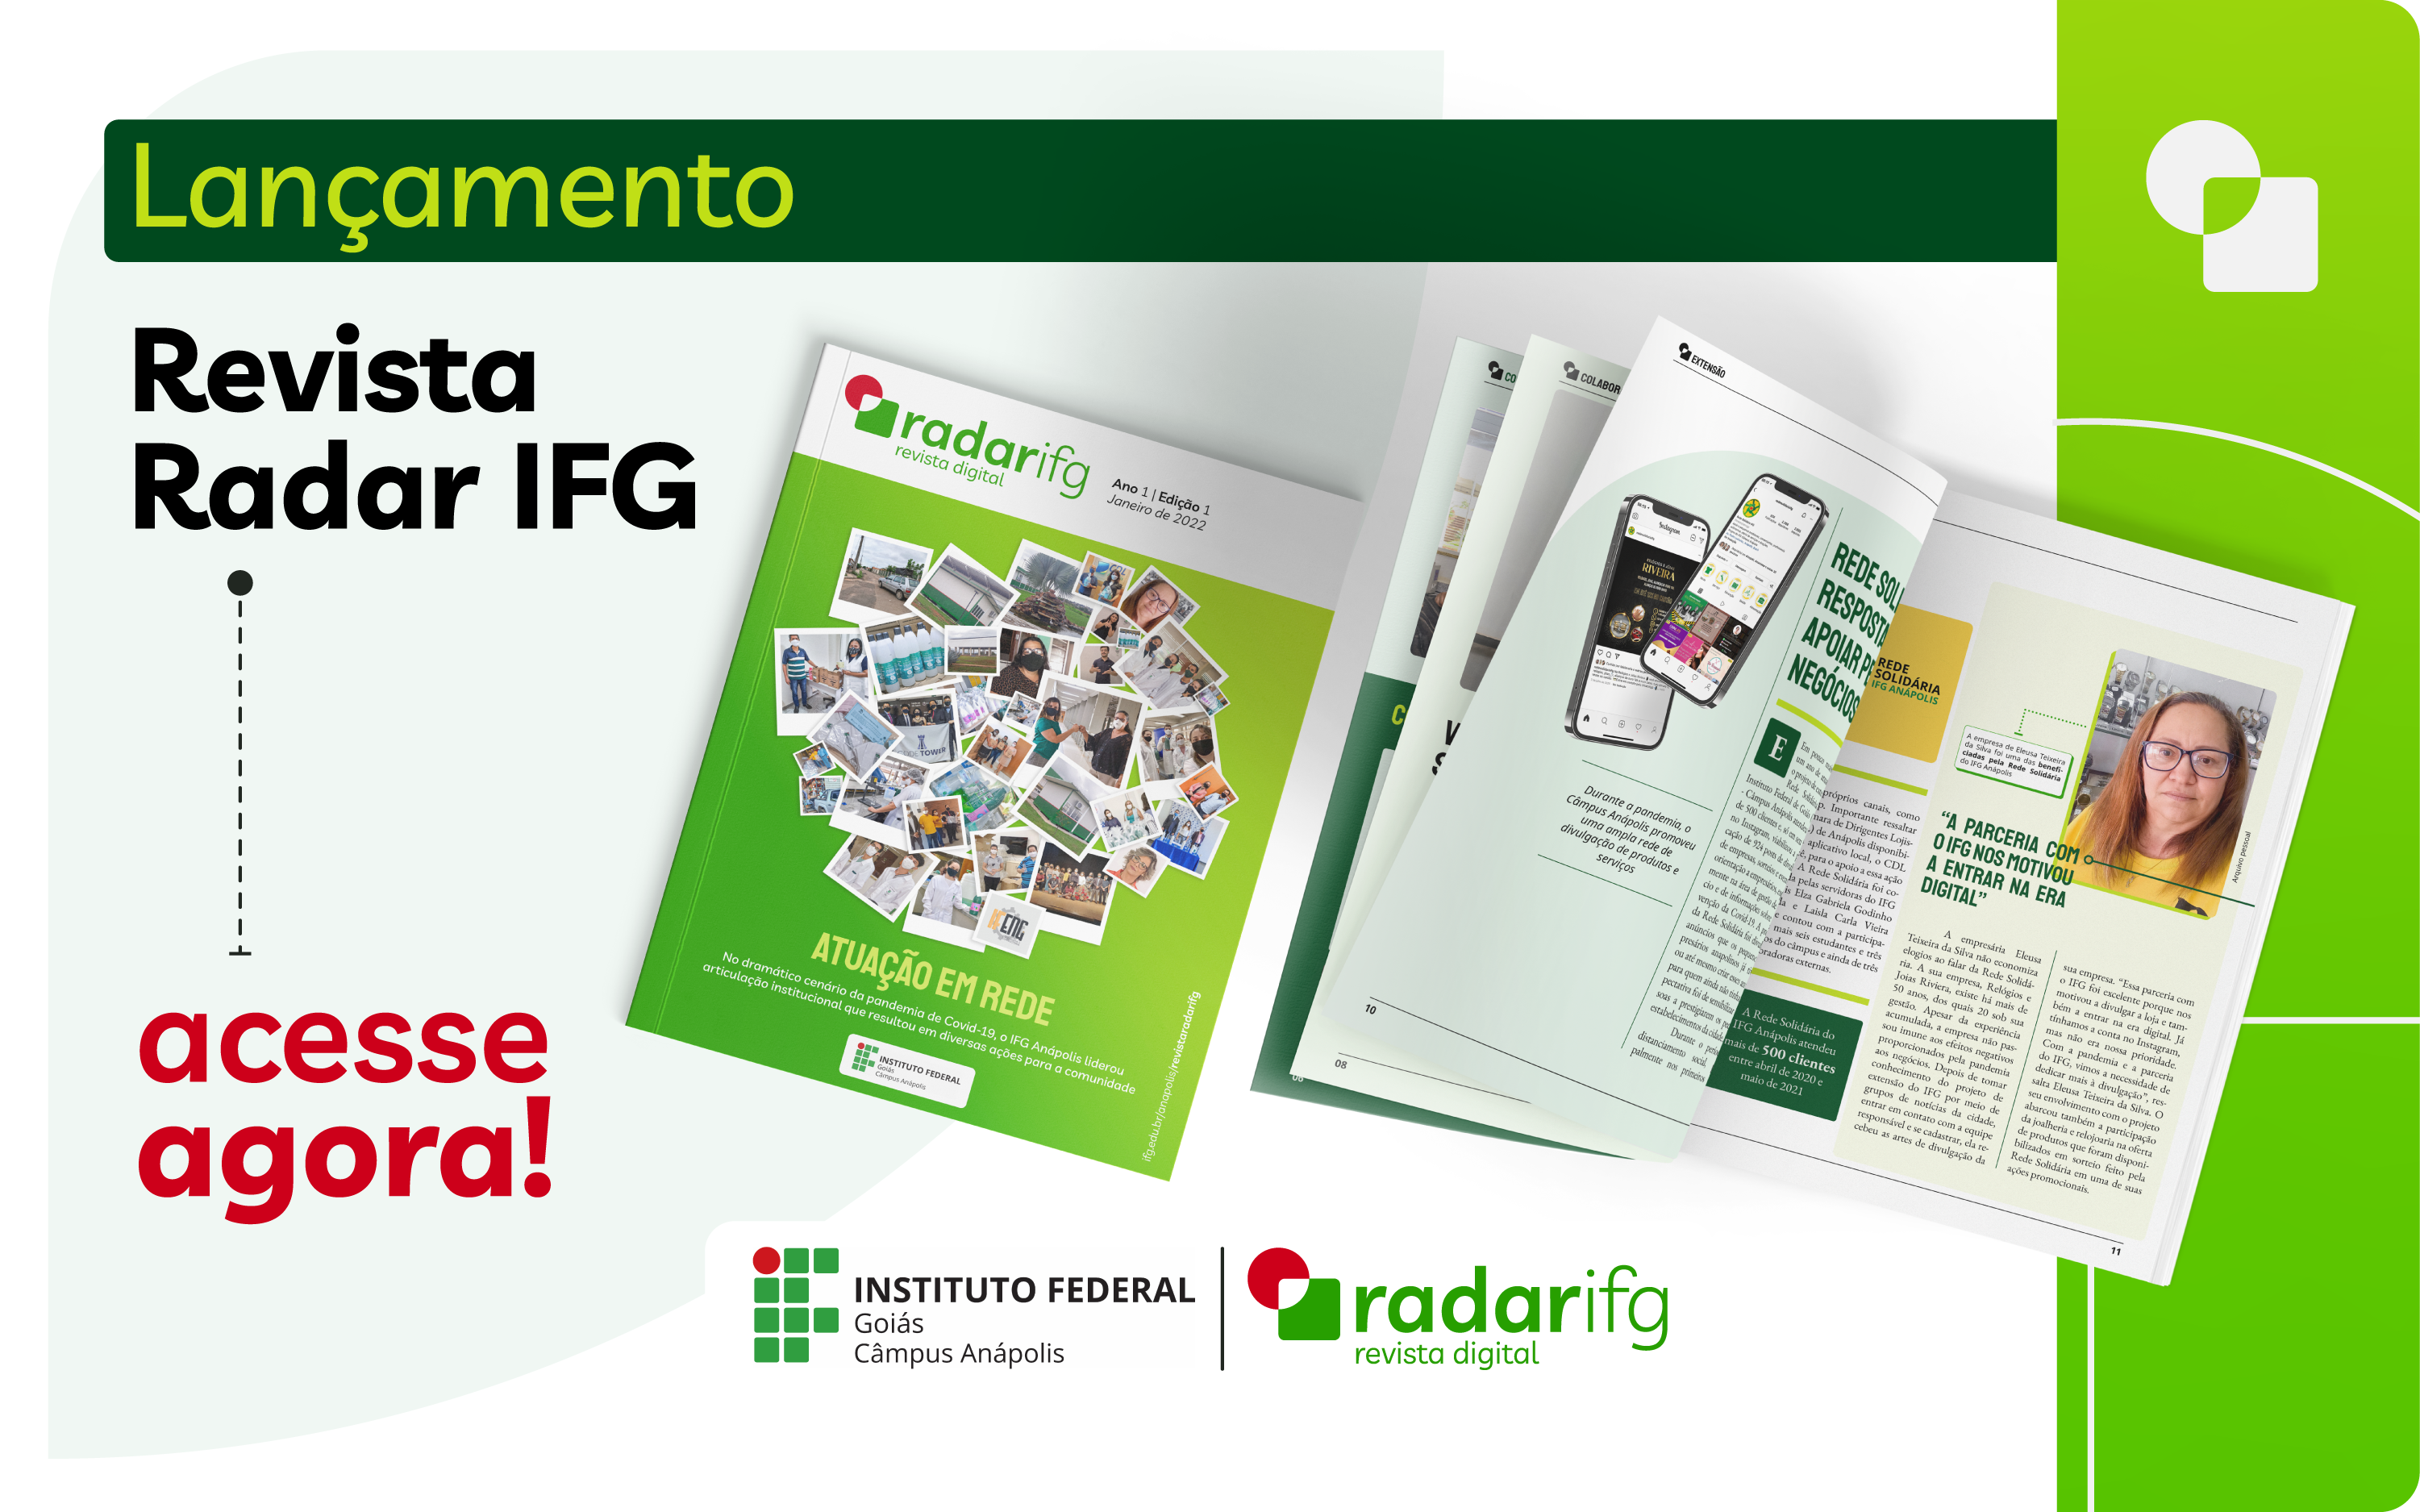 A Revista Radar IFG pode ser acessada em: www.ifg.edu.br/anapolis/revistaradarifg